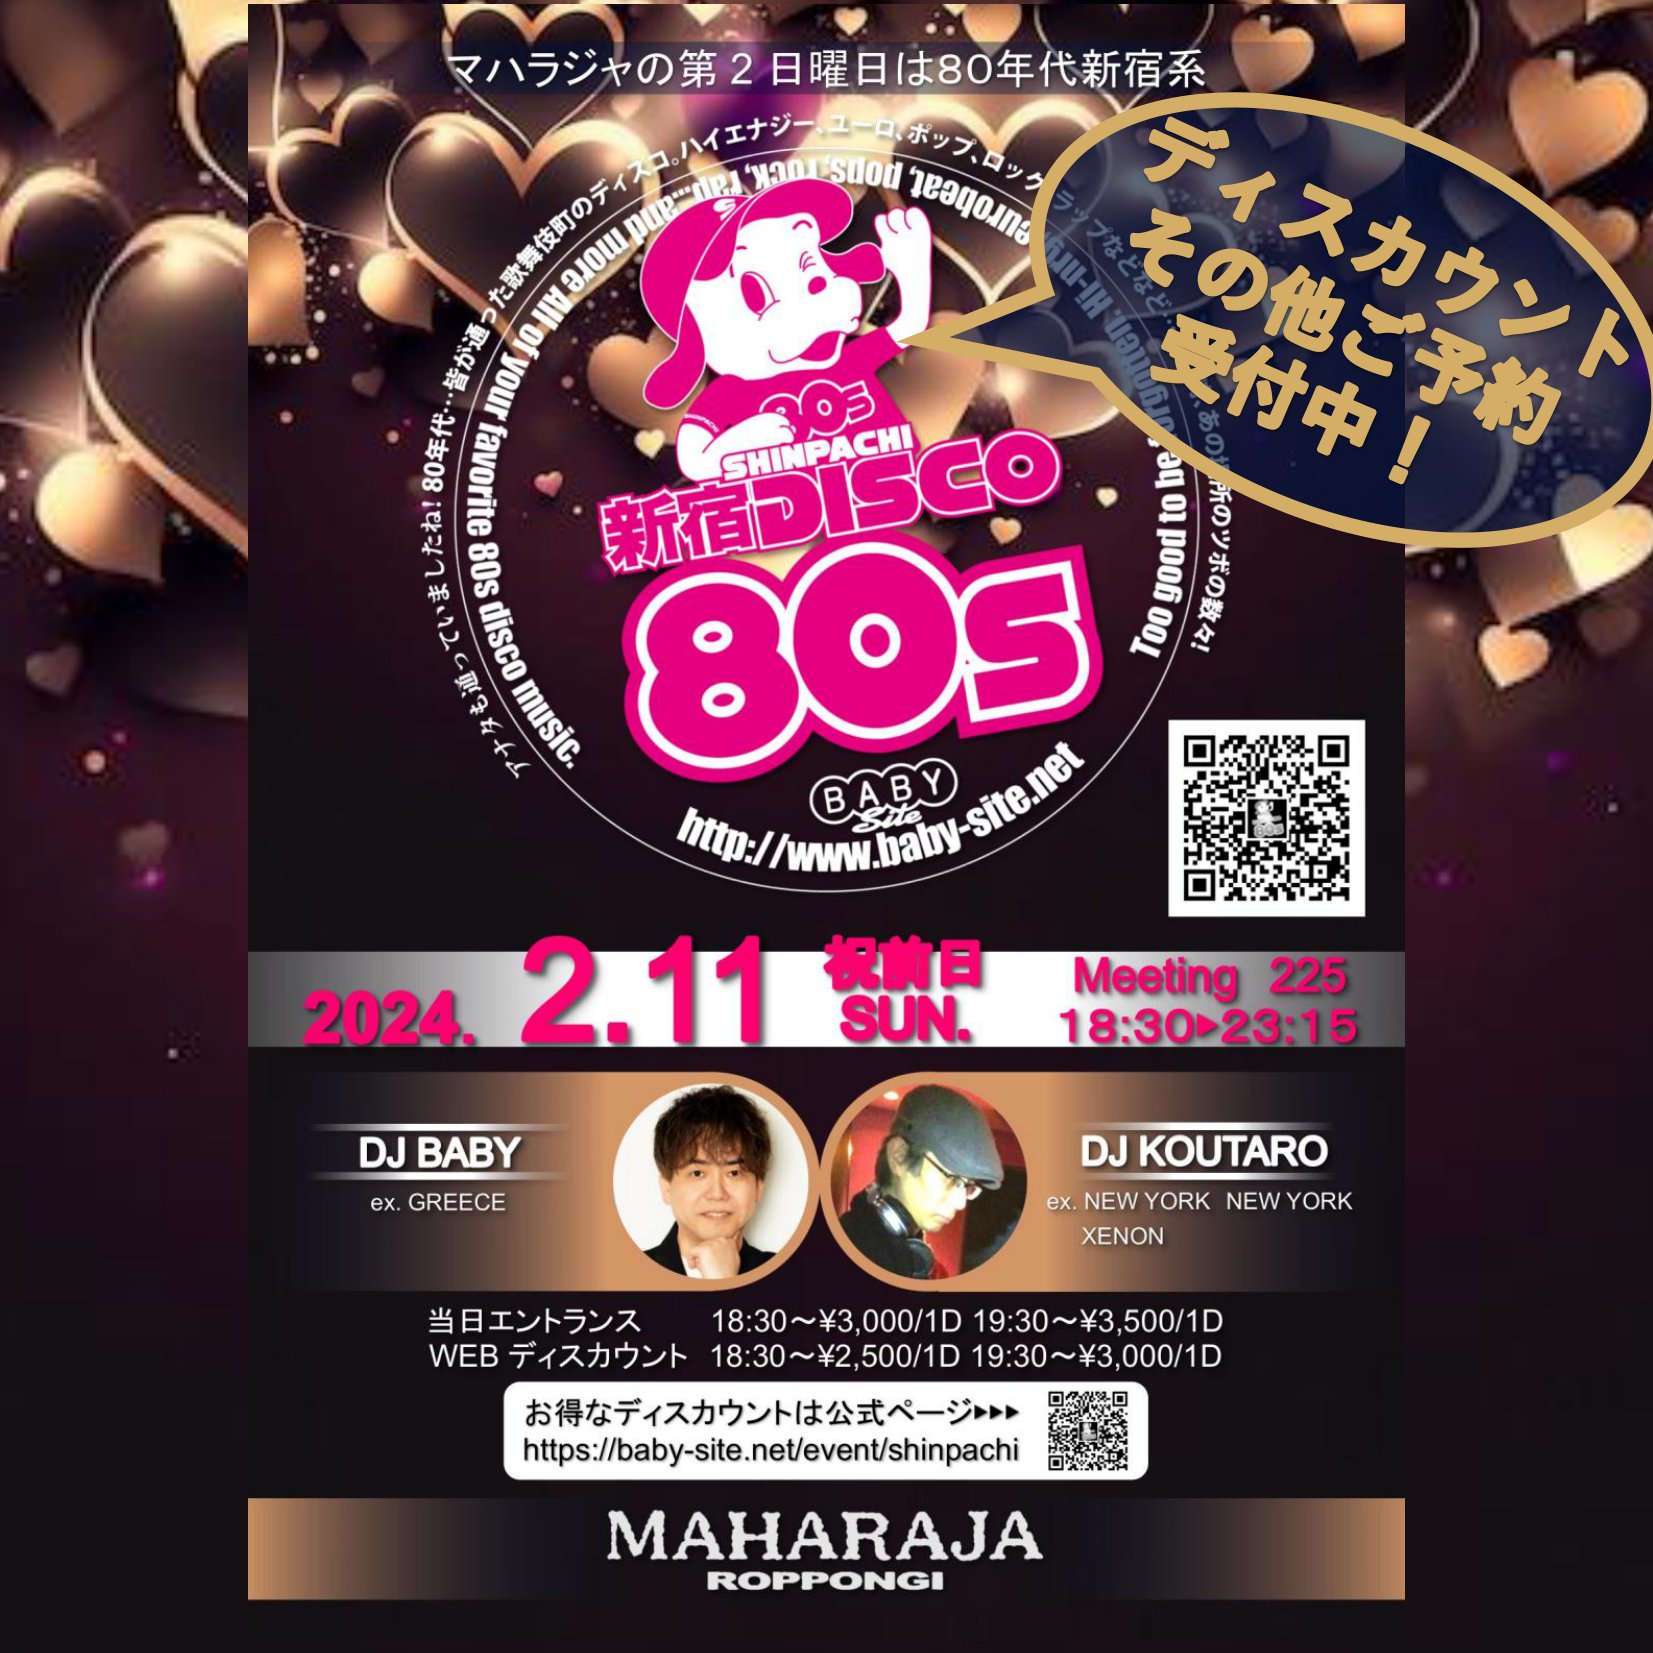 3/10(日)18:30『SHINPACHI新宿DISCO80s』MAHARAJA六本木 – DJ BABY